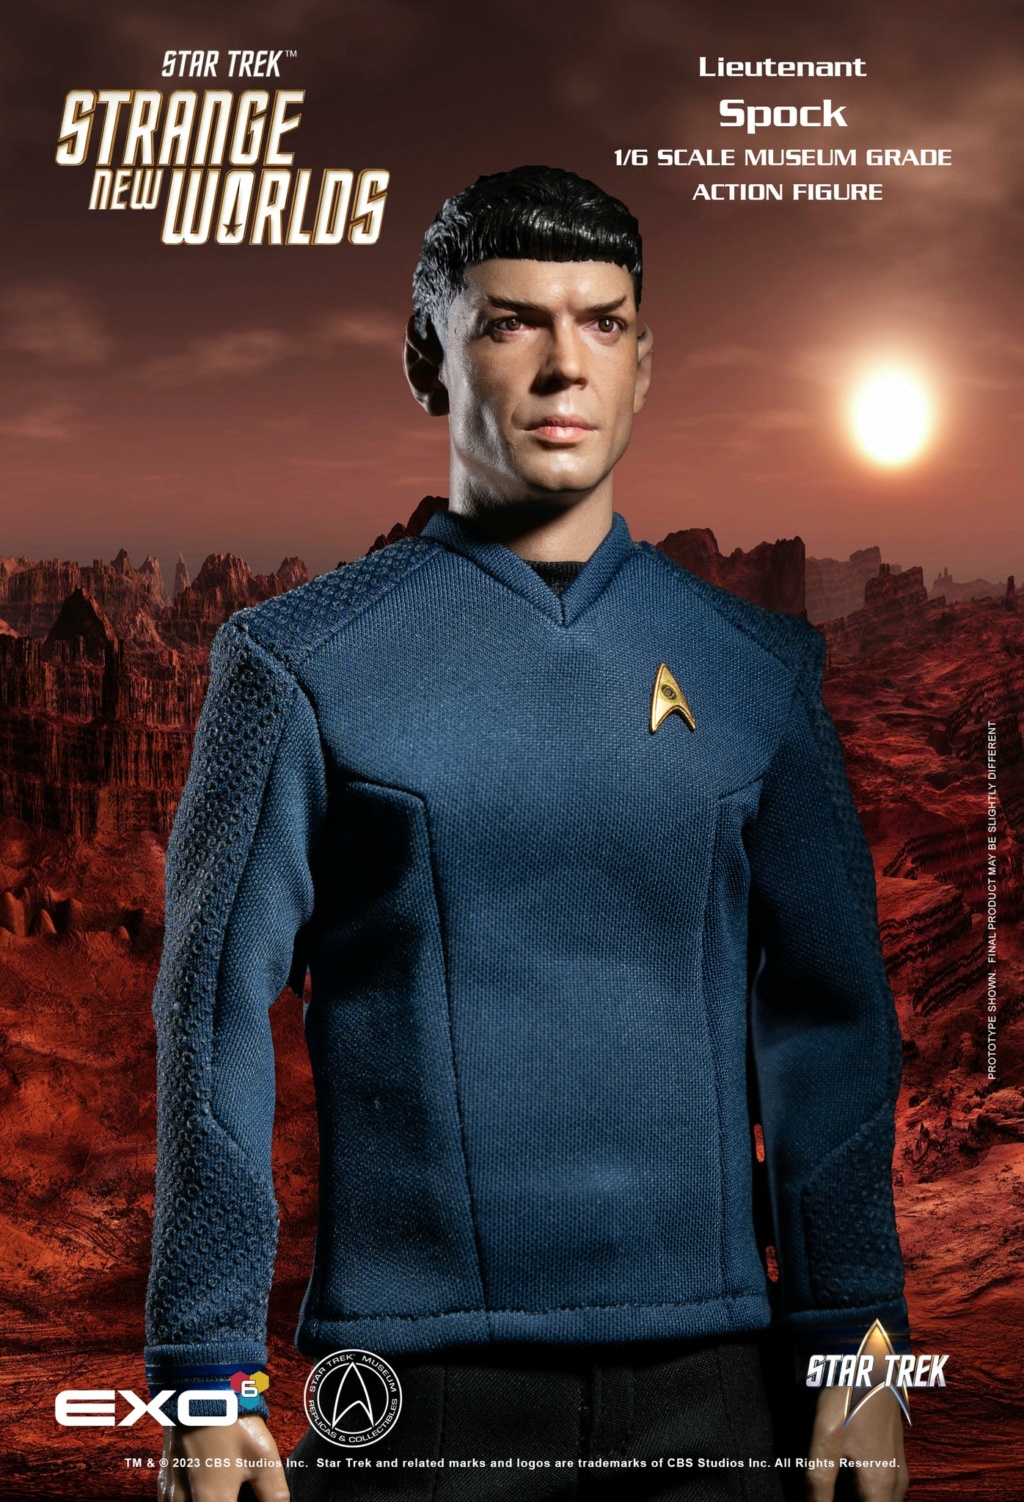 Exo-6 : Star Trek Strange New Worlds - Lieutenant Spock 1/6 Scale Snw_sp12